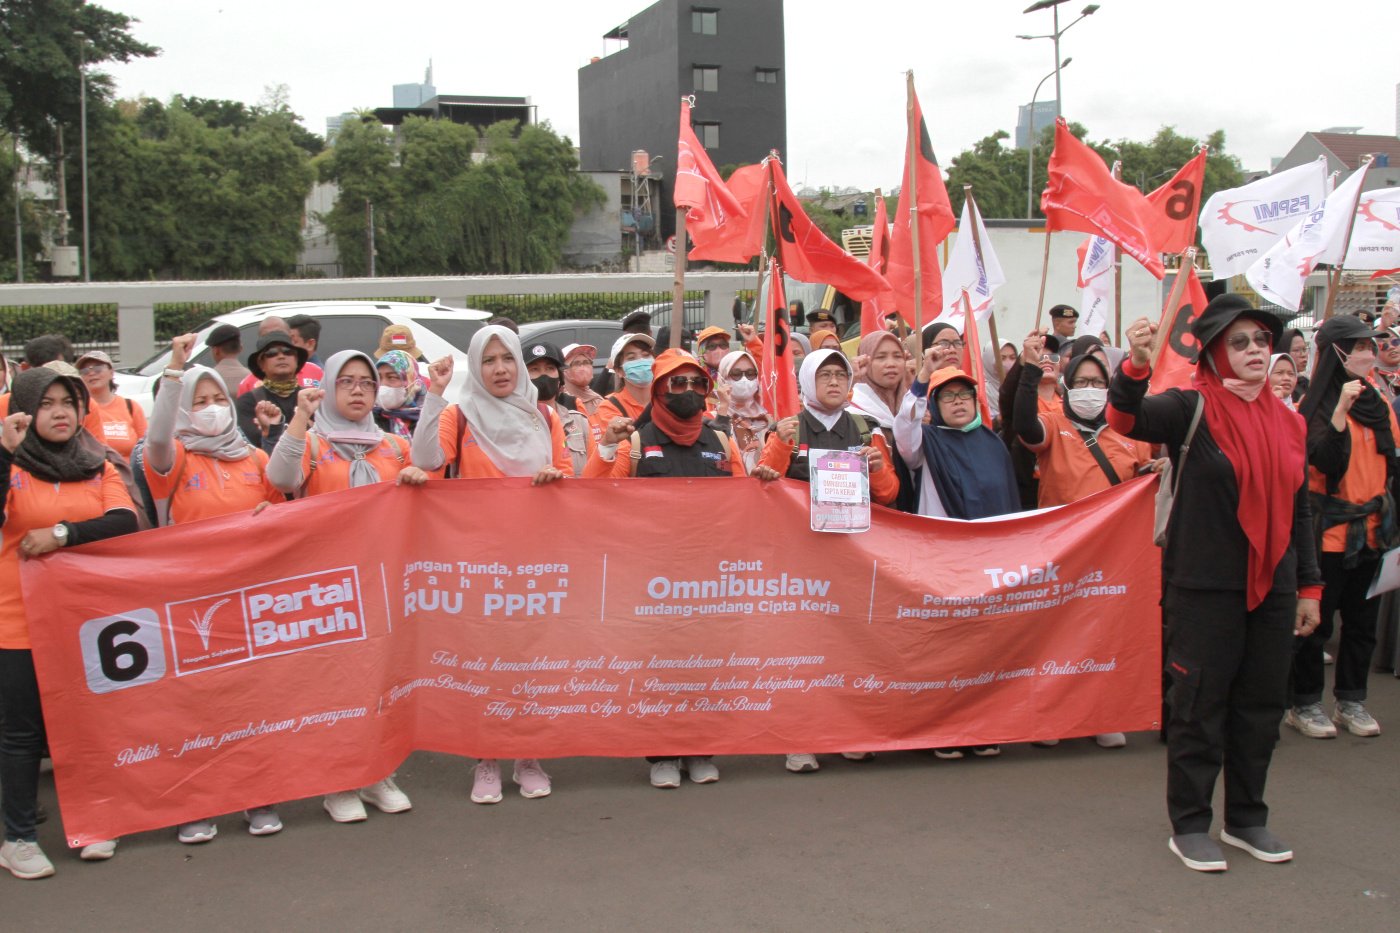 Ilustrasi Ratusan buruh perempuan dari Partai Buruh dan serikat buruh FSPMI gelar aksi demo di DPR (Ashar/SinPo.id)